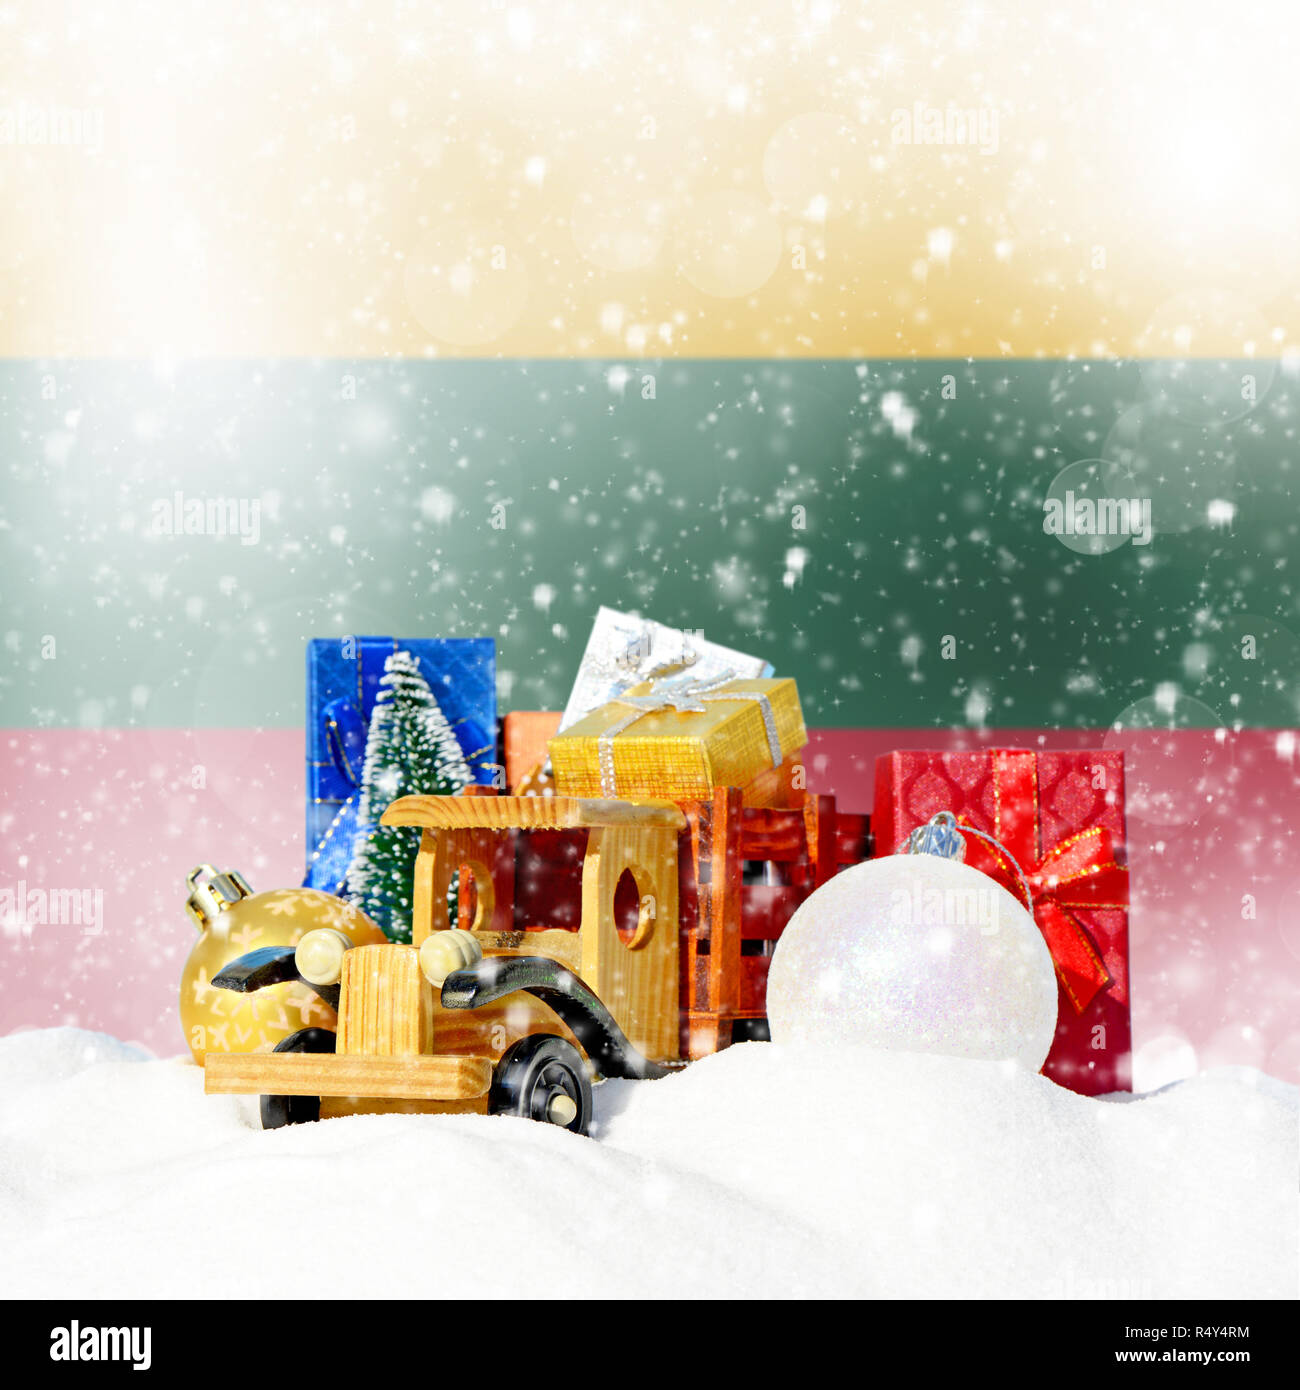 Weihnachten Hintergrund. Spielzeug-LKW mit Geschenken, Neues Jahr Tanne, Kugeln im Schneetreiben und litauischer Flagge Stockfoto